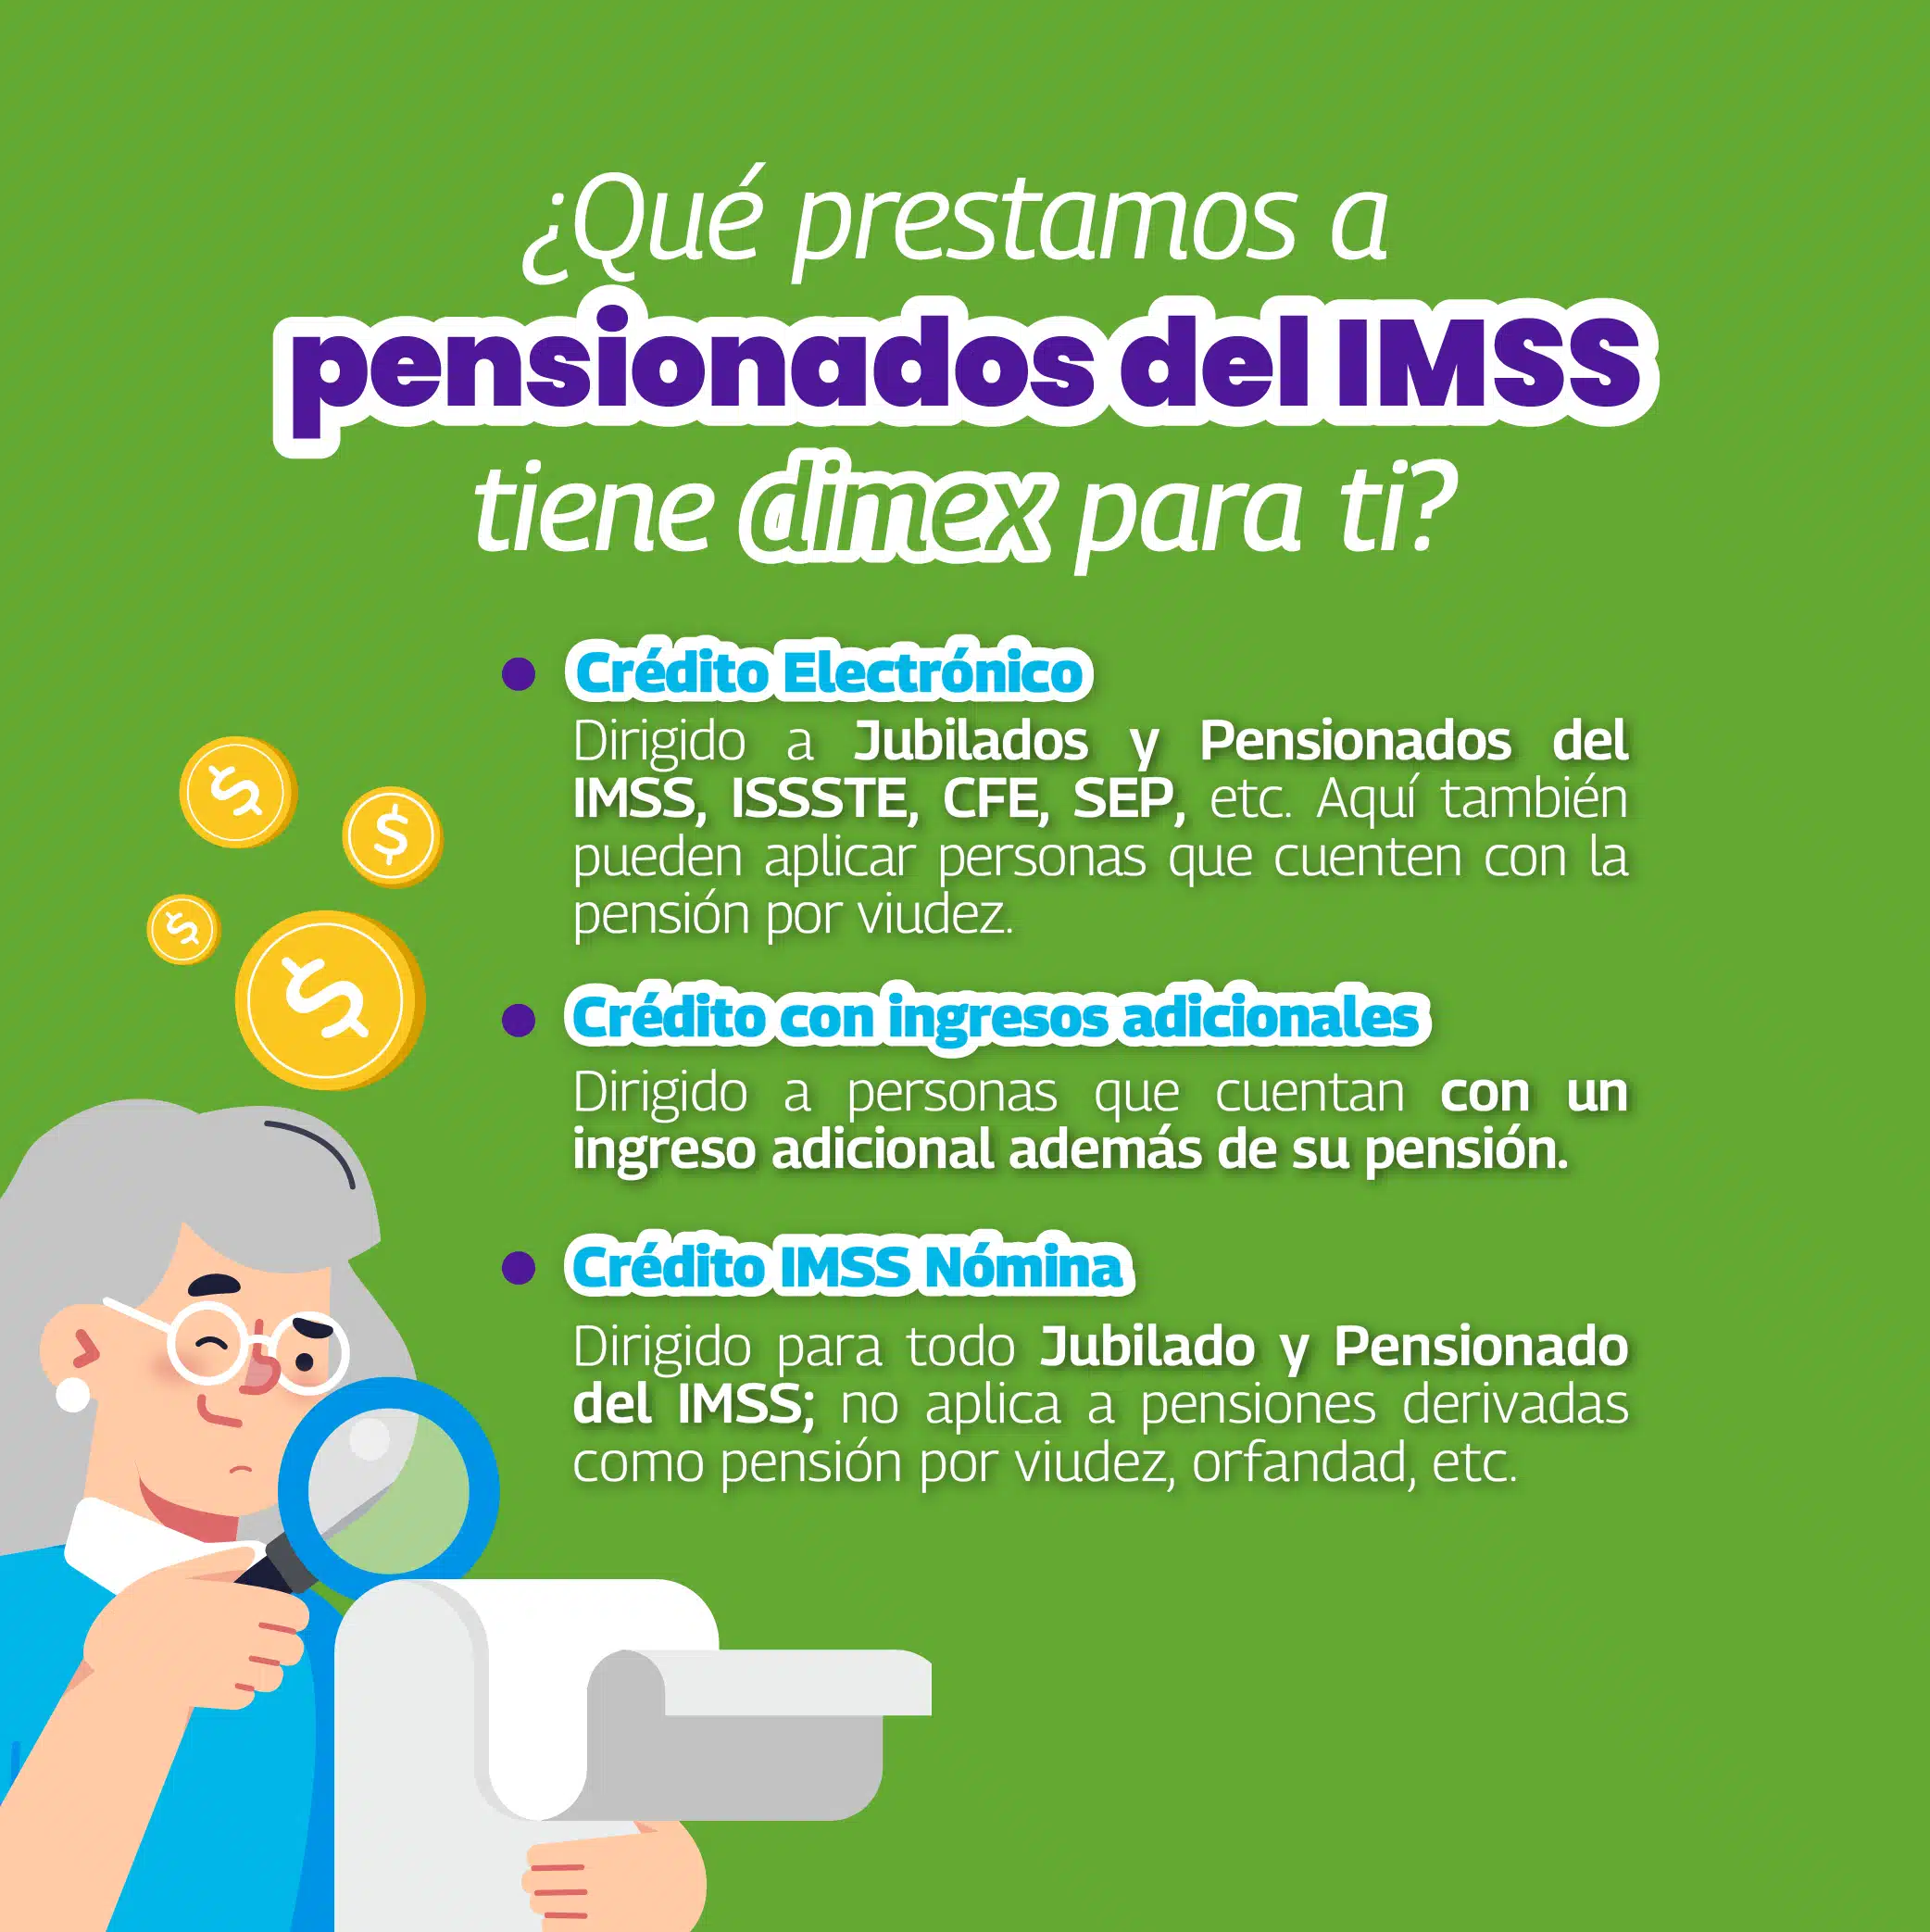 Si eres un pensionado, esta información es para ti: En dimex tenemos préstamos a pensionados del IMSS, entra y descubre cómo obtenerlos.